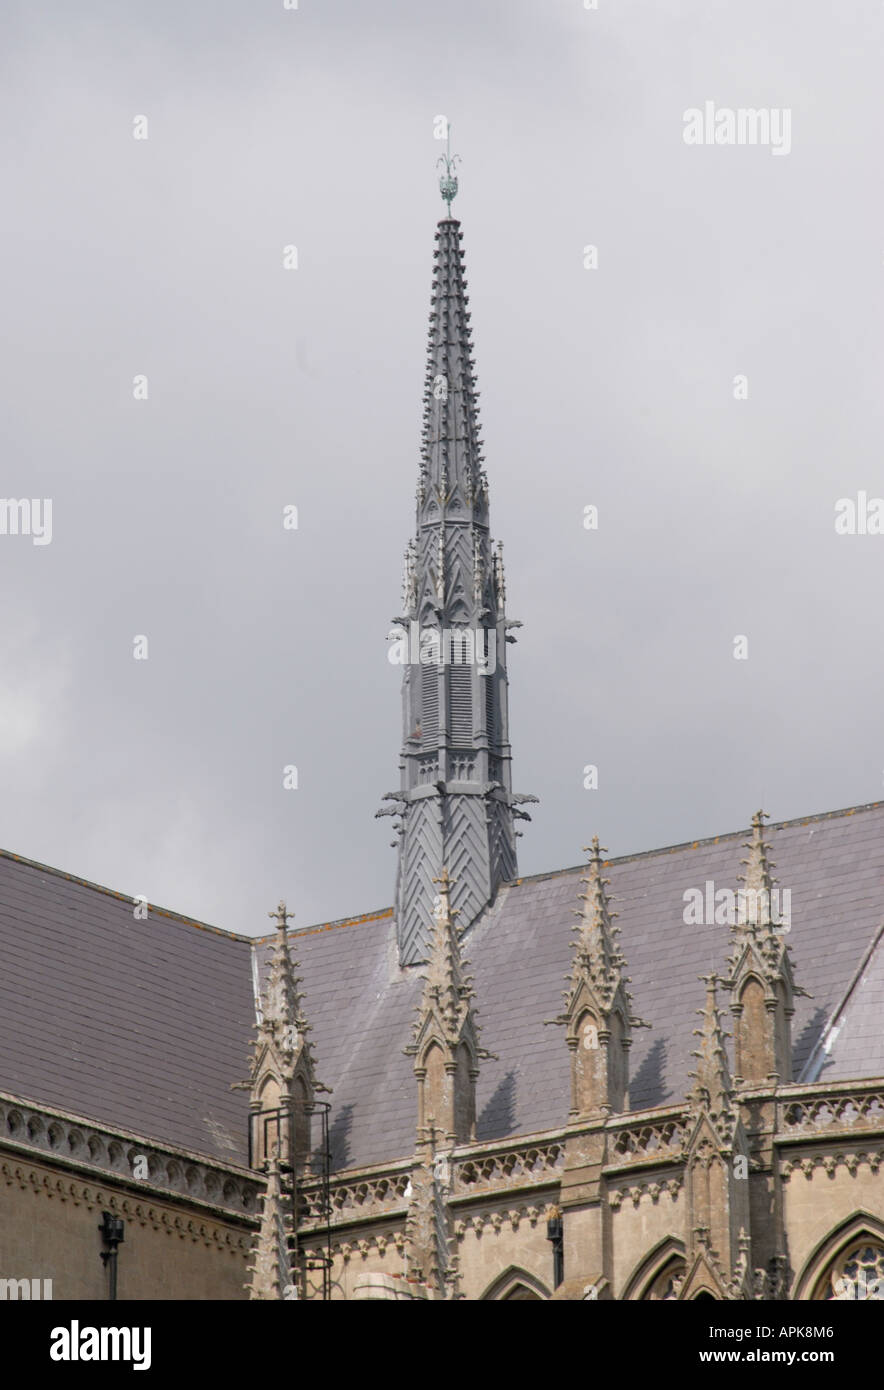 Cathédrale de spire gris Arundel contre un ciel gris Banque D'Images